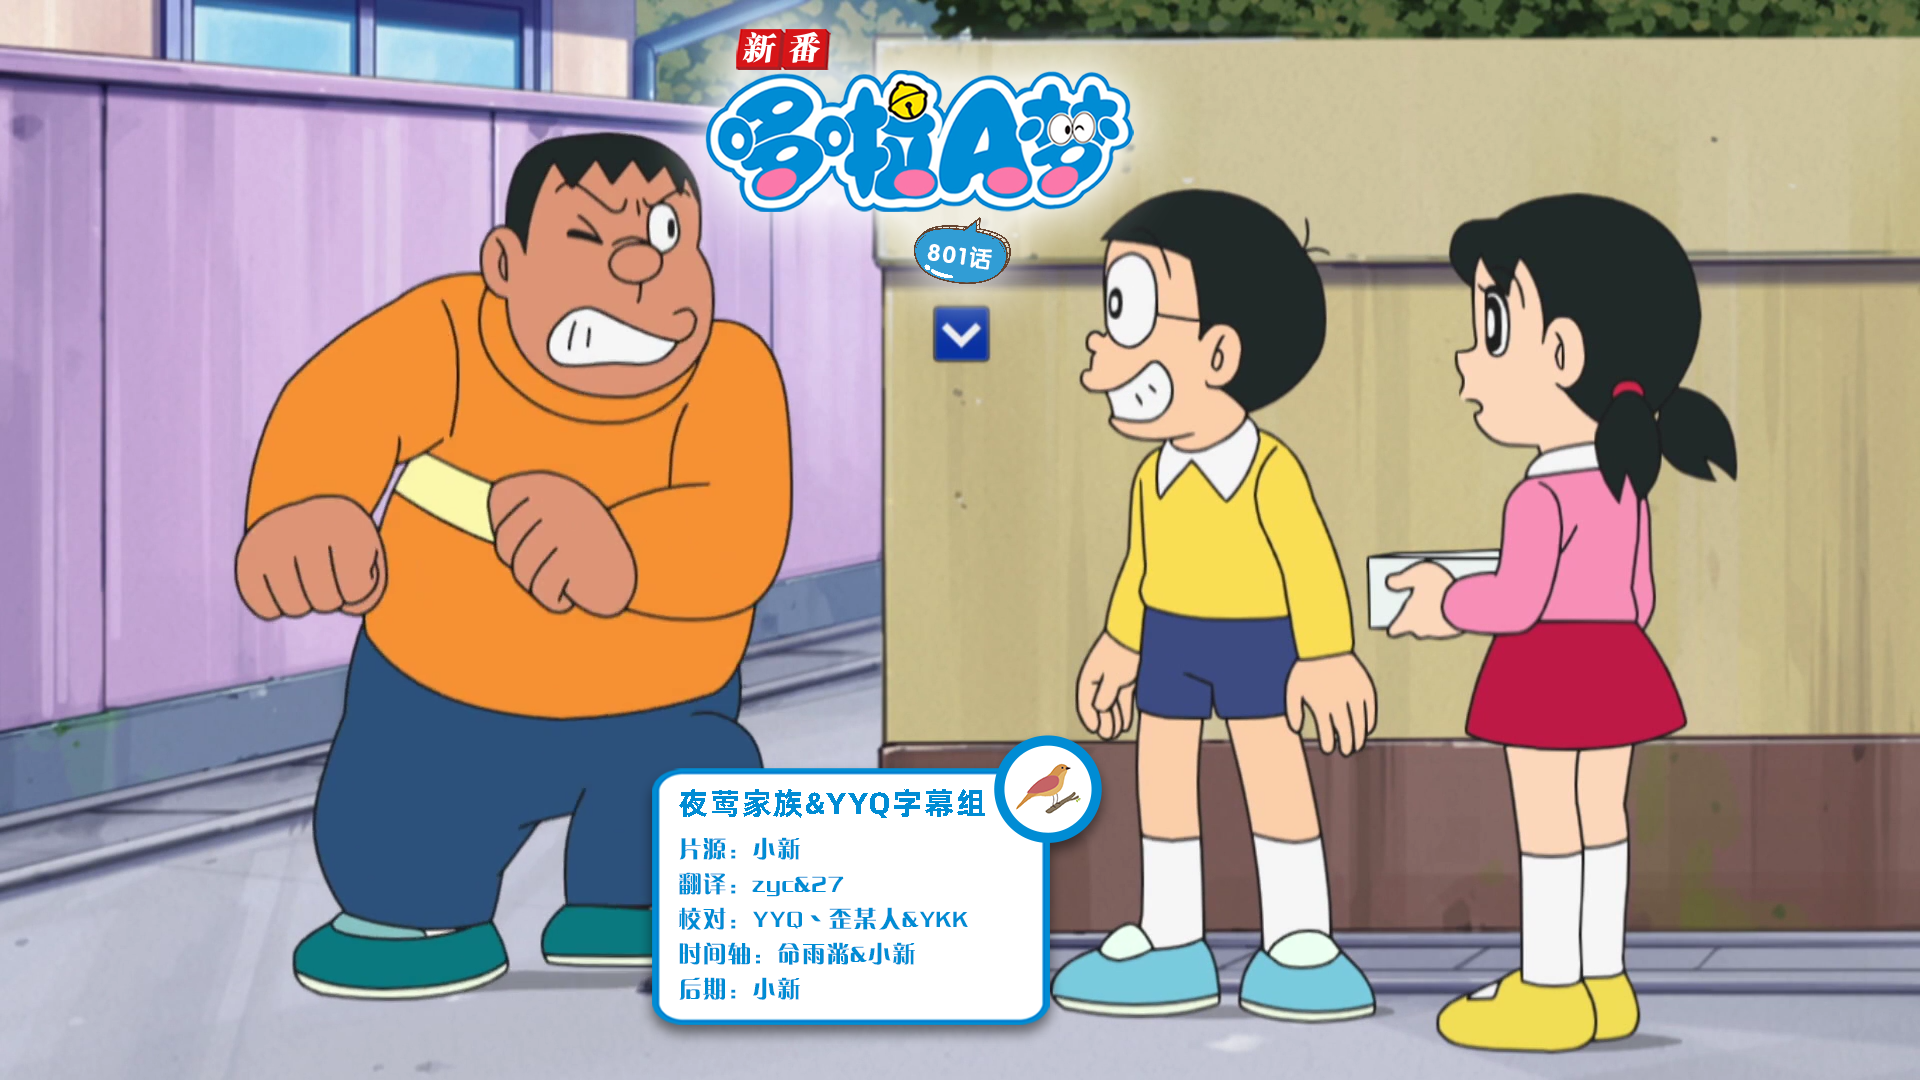 [夜莺家族&YYQ字幕组]New Doraemon 哆啦A梦新番[801][2024.03.09][AVC][1080P][GB_JP]插图icecomic动漫-云之彼端,约定的地方(´･ᴗ･`)2